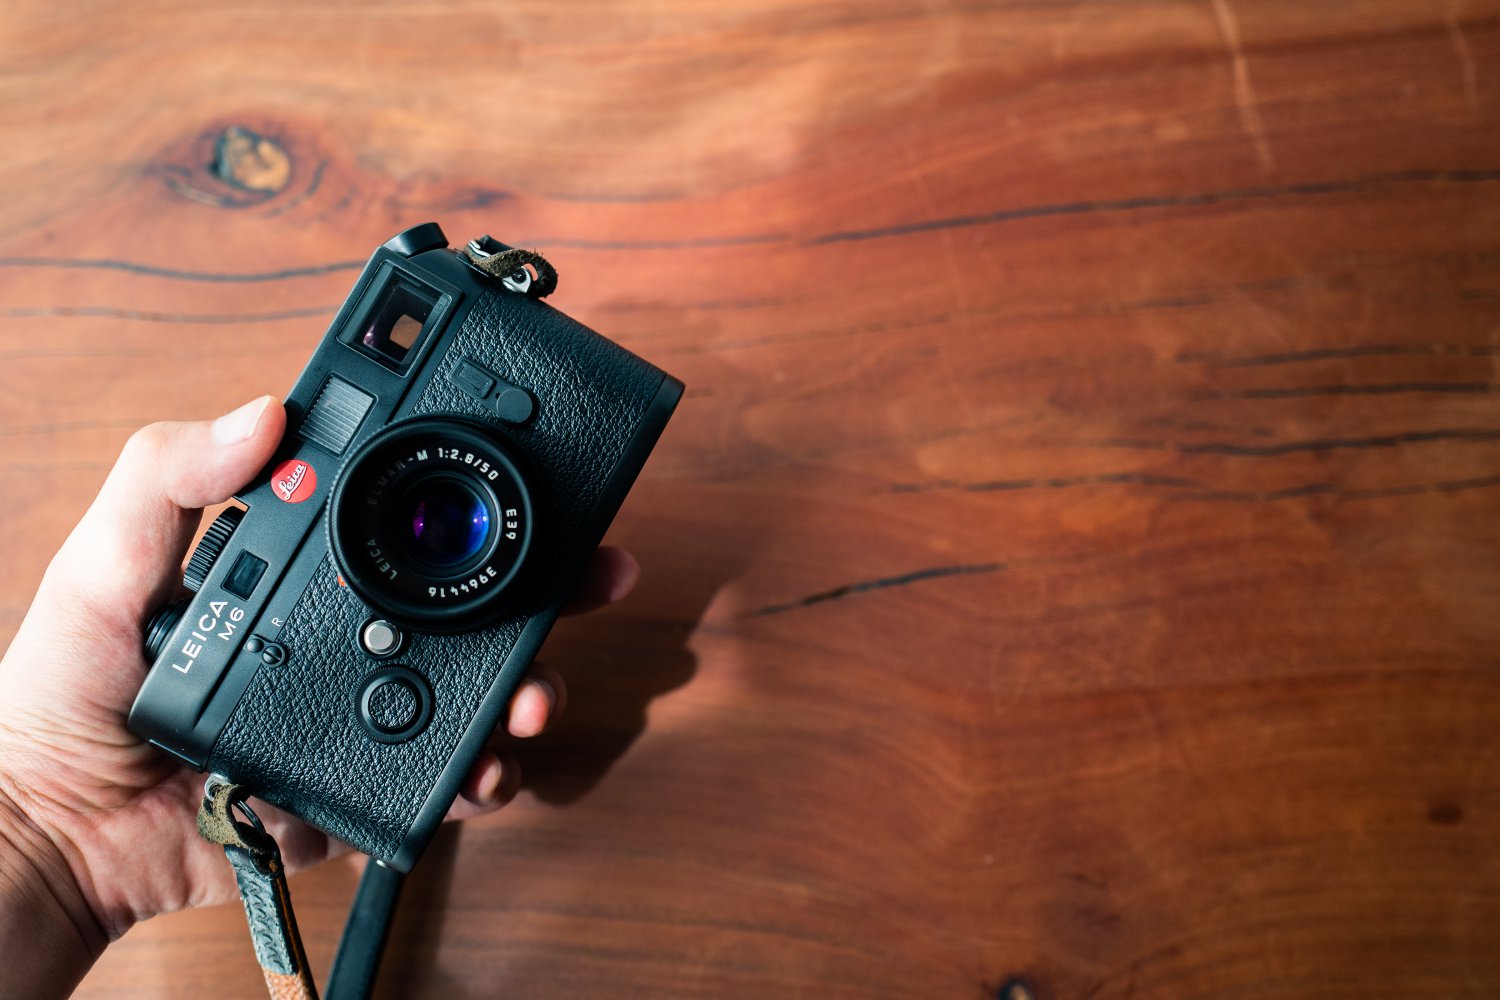 作例あり】フィルムライカ「Leica M6」レビュー。露出計の使い勝手やM6 